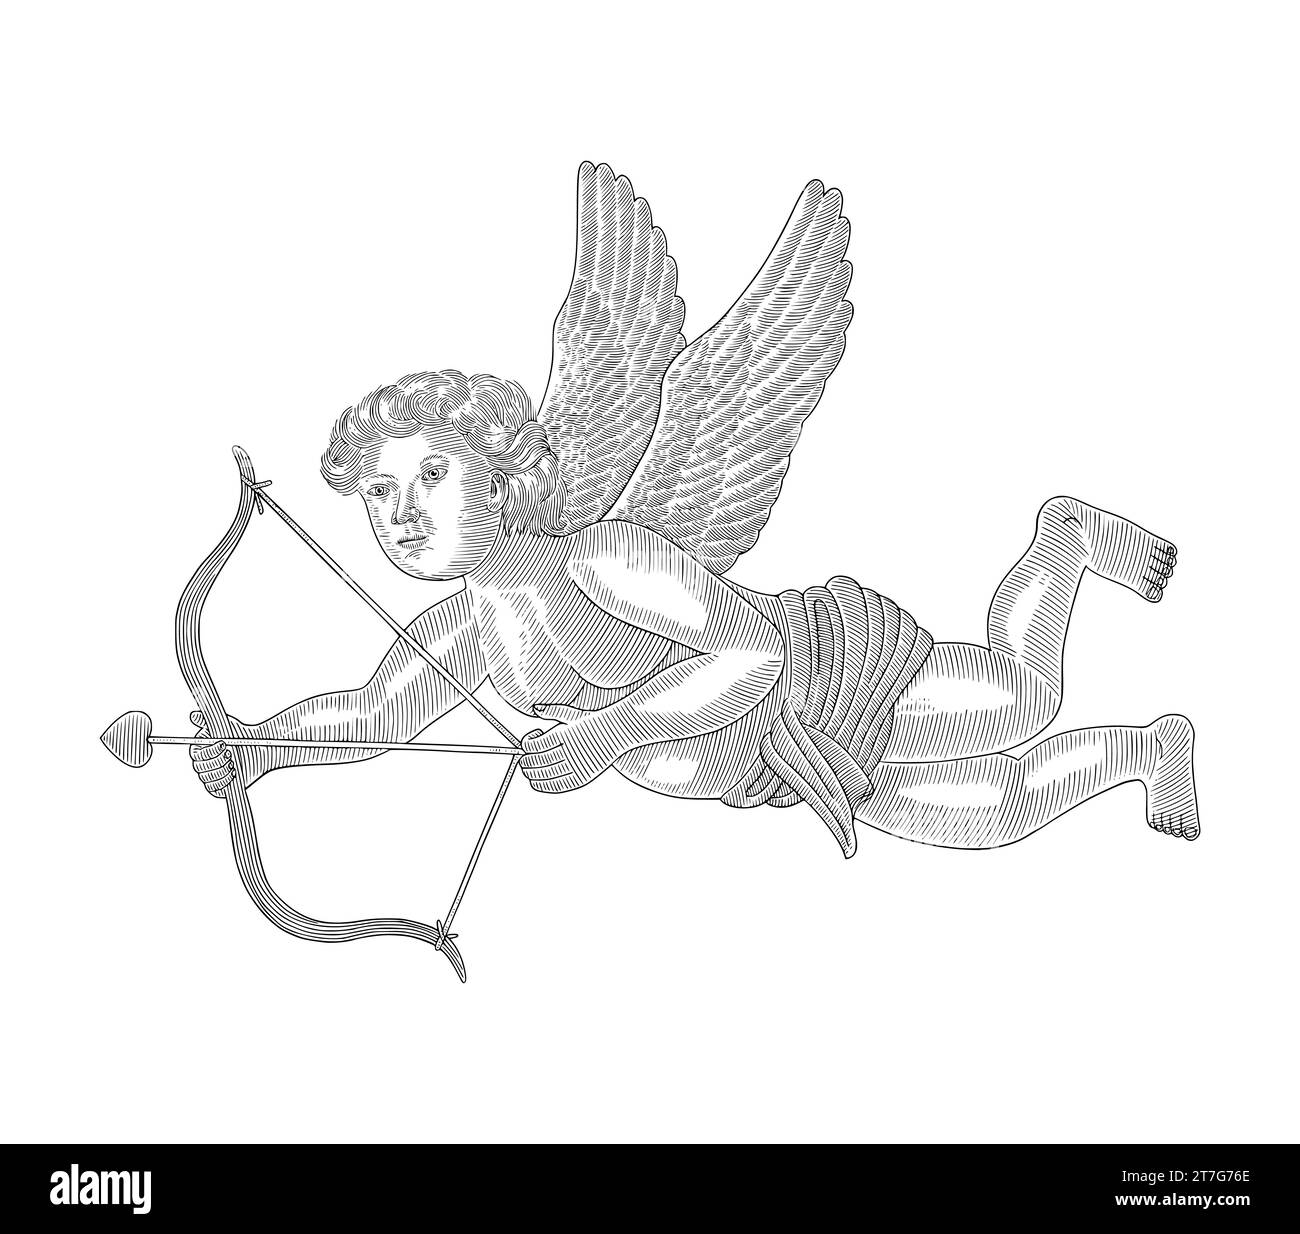 cupidon avec arc et flèche. Illustration de style dessin gravure vintage Illustration de Vecteur